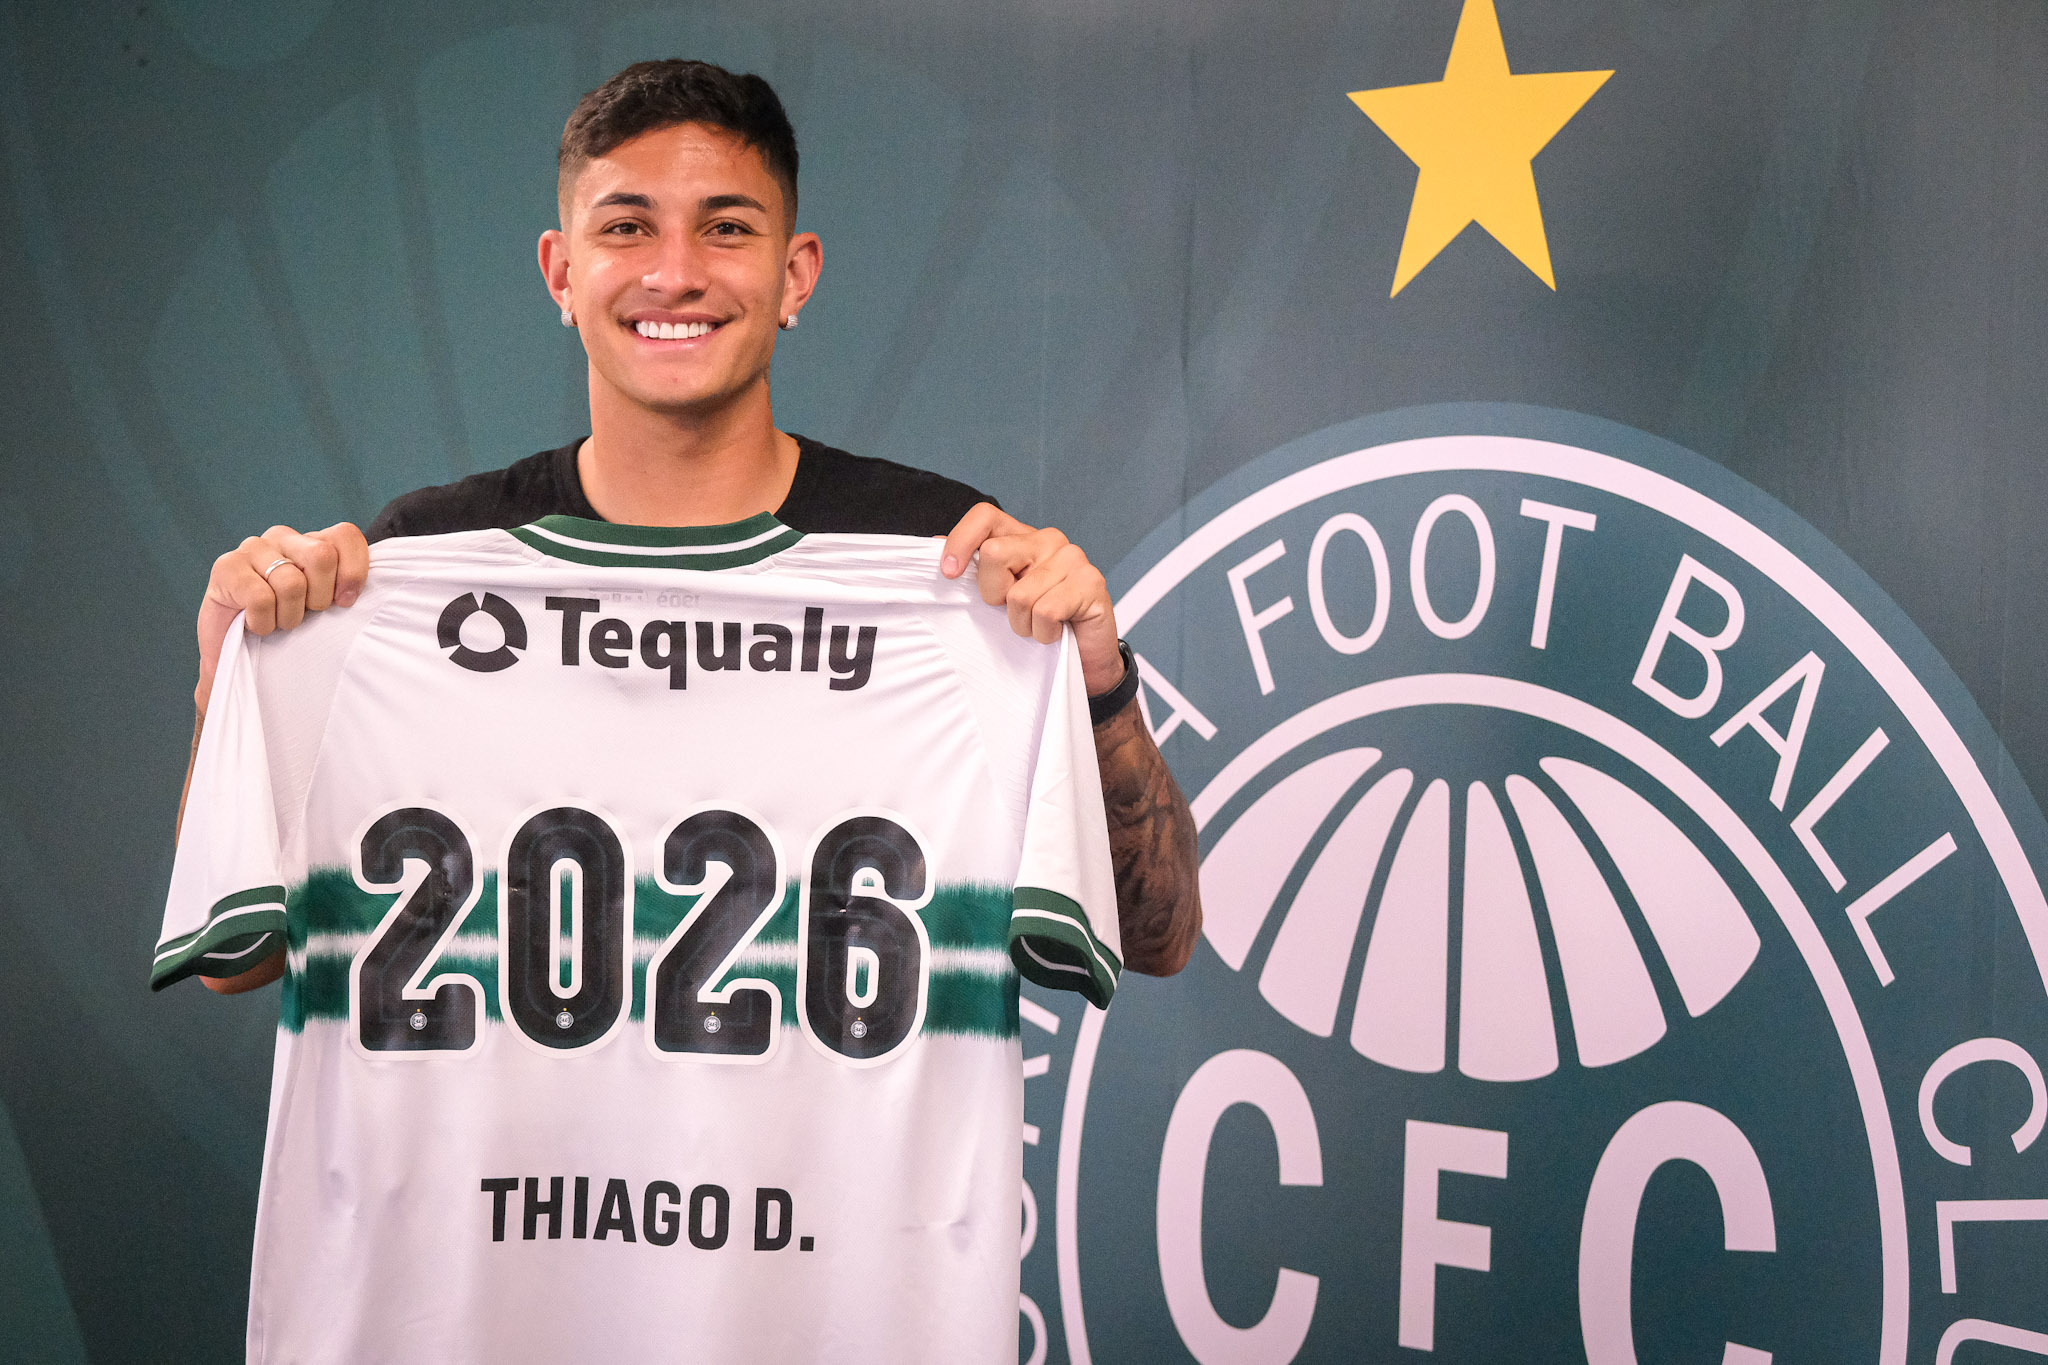 Thiago Dombroski renova com o Coritiba até 2026 (Foto: Divulgação/Coritiba)